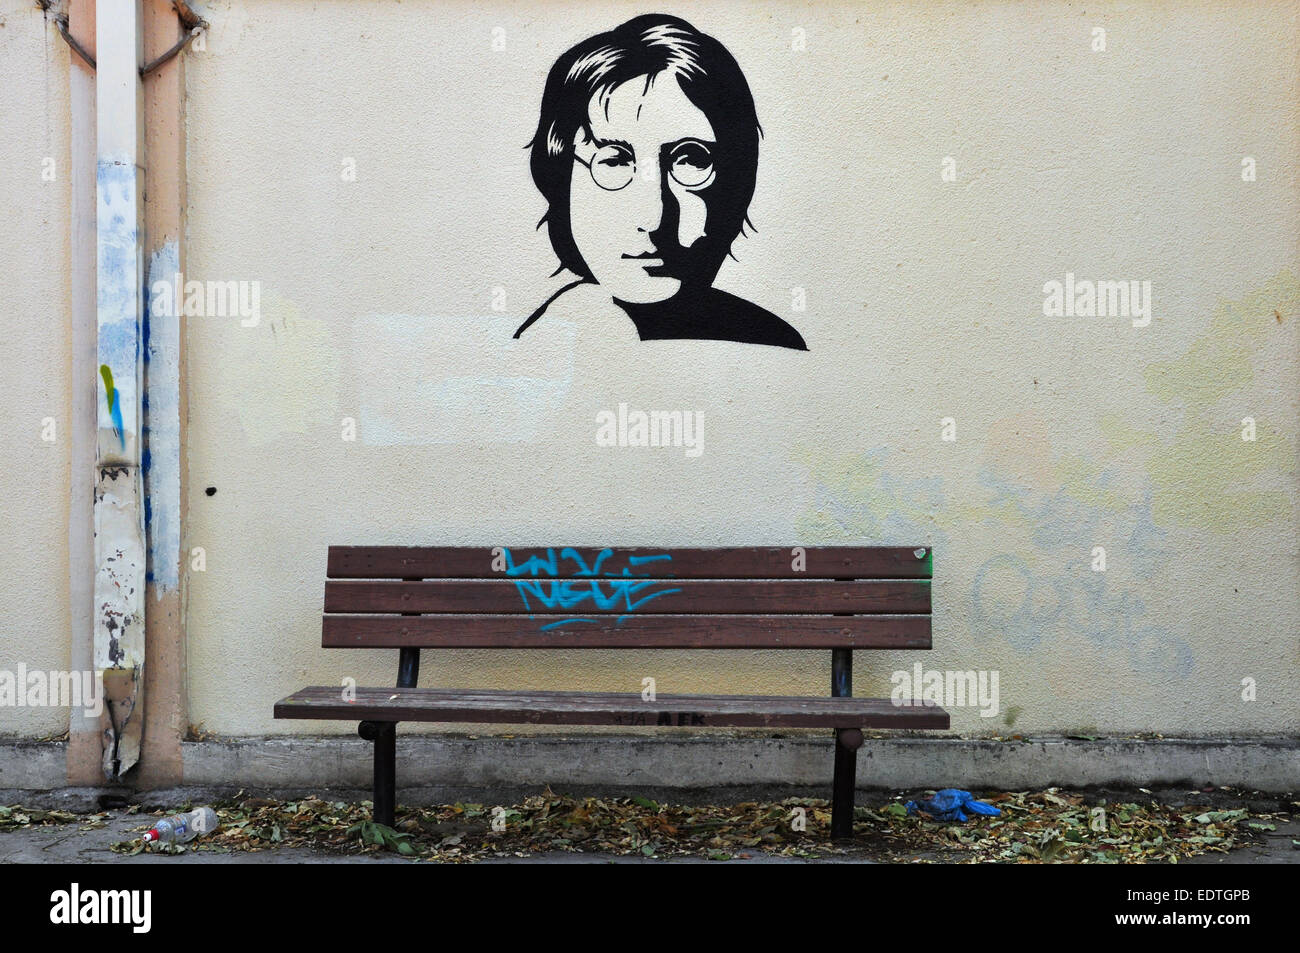 Berühmte Musiker John Lennon von den Beatles Porträt Schablone Graffiti auf strukturierte Wand und Holzbank. Stockfoto